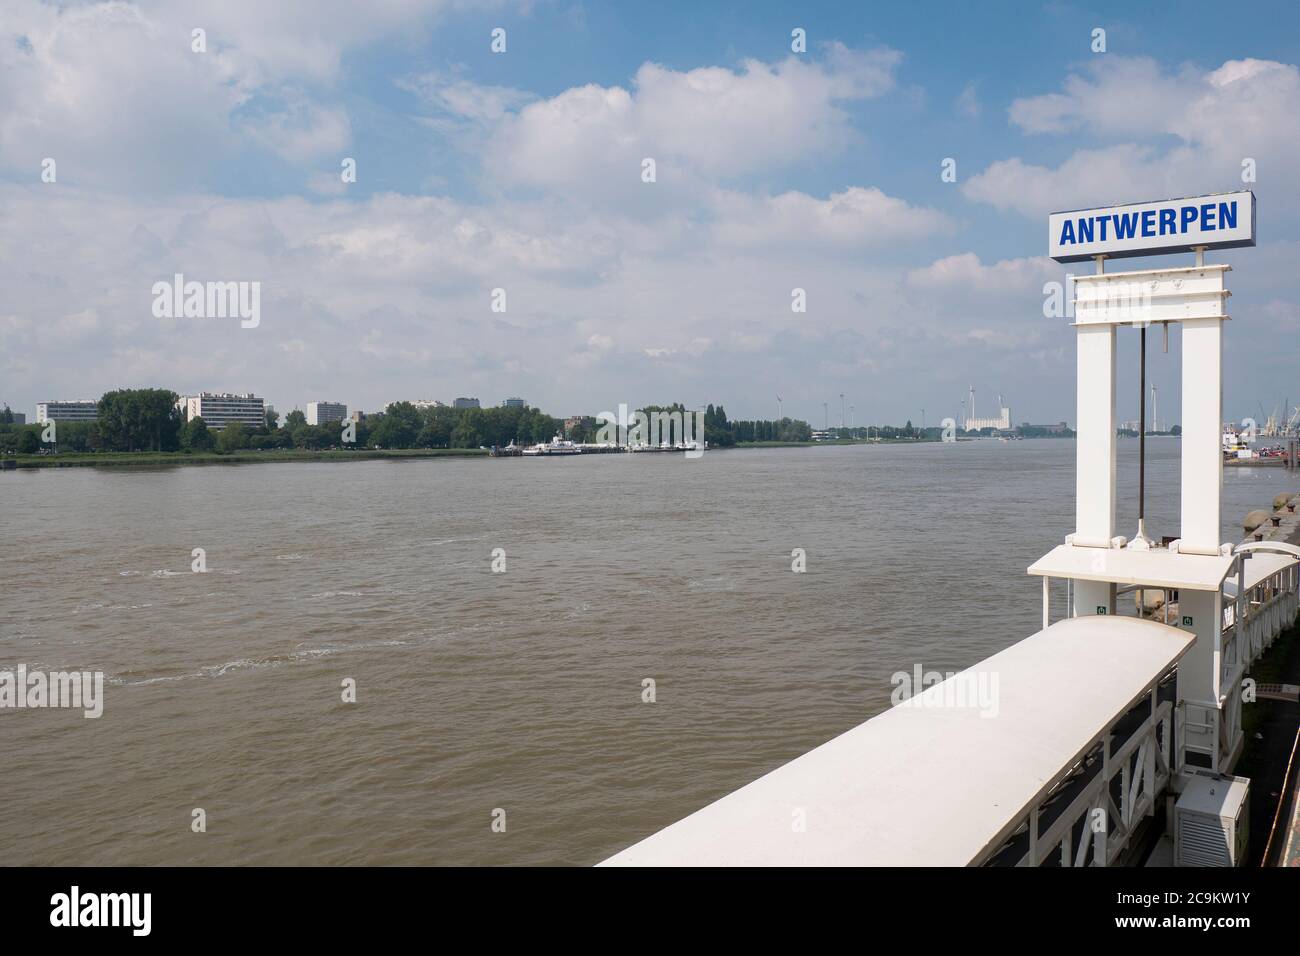 Antwerpen, Belgien, Schild mit Ortsnamen am rechten Ufer der Schelde mit Blick auf die Küste am linken Ufer Stockfoto